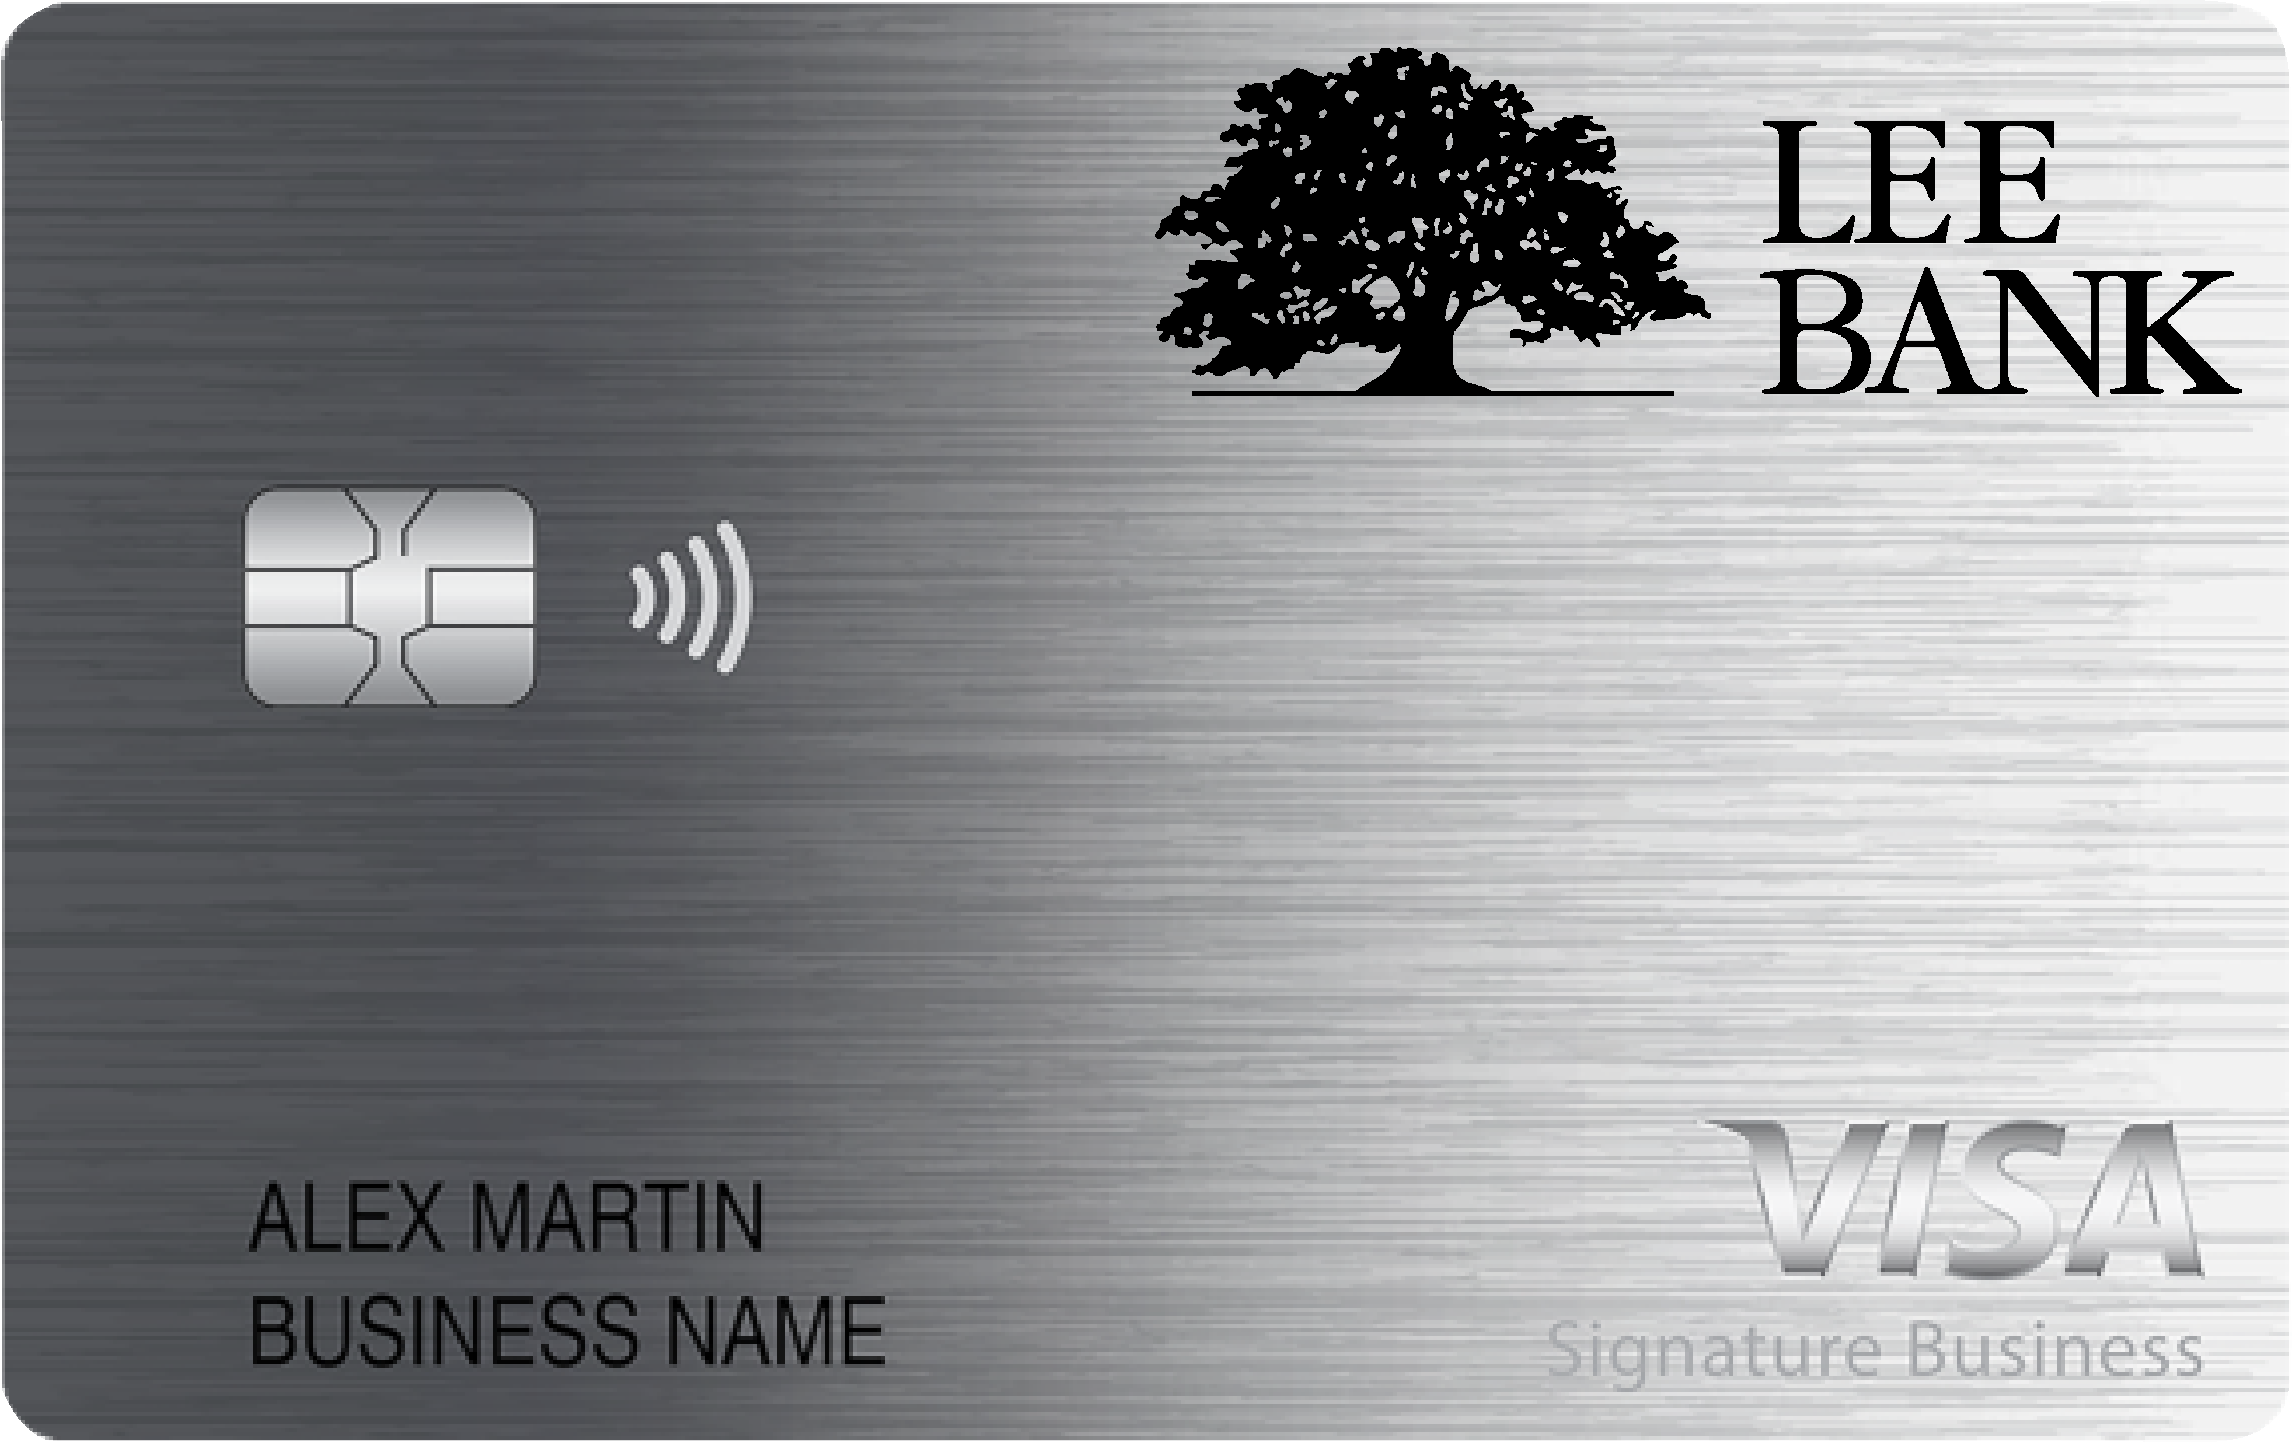 Lee Bank Smart Business Rewards Card